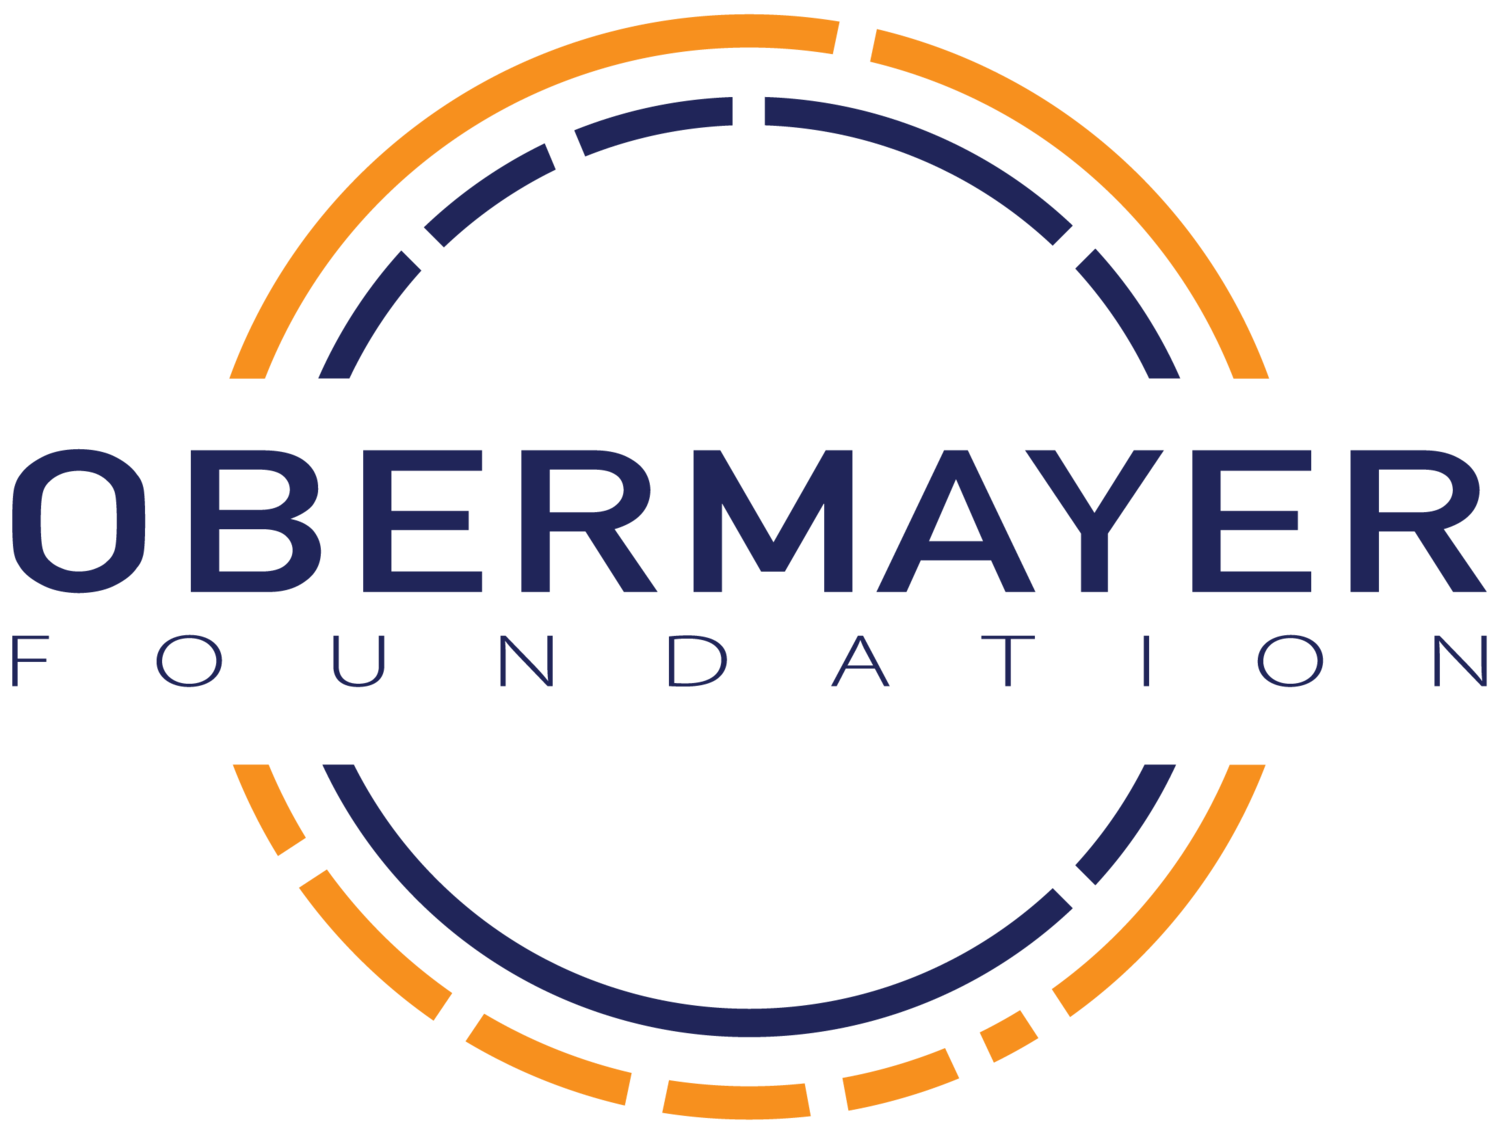 The Obermayer Foundation